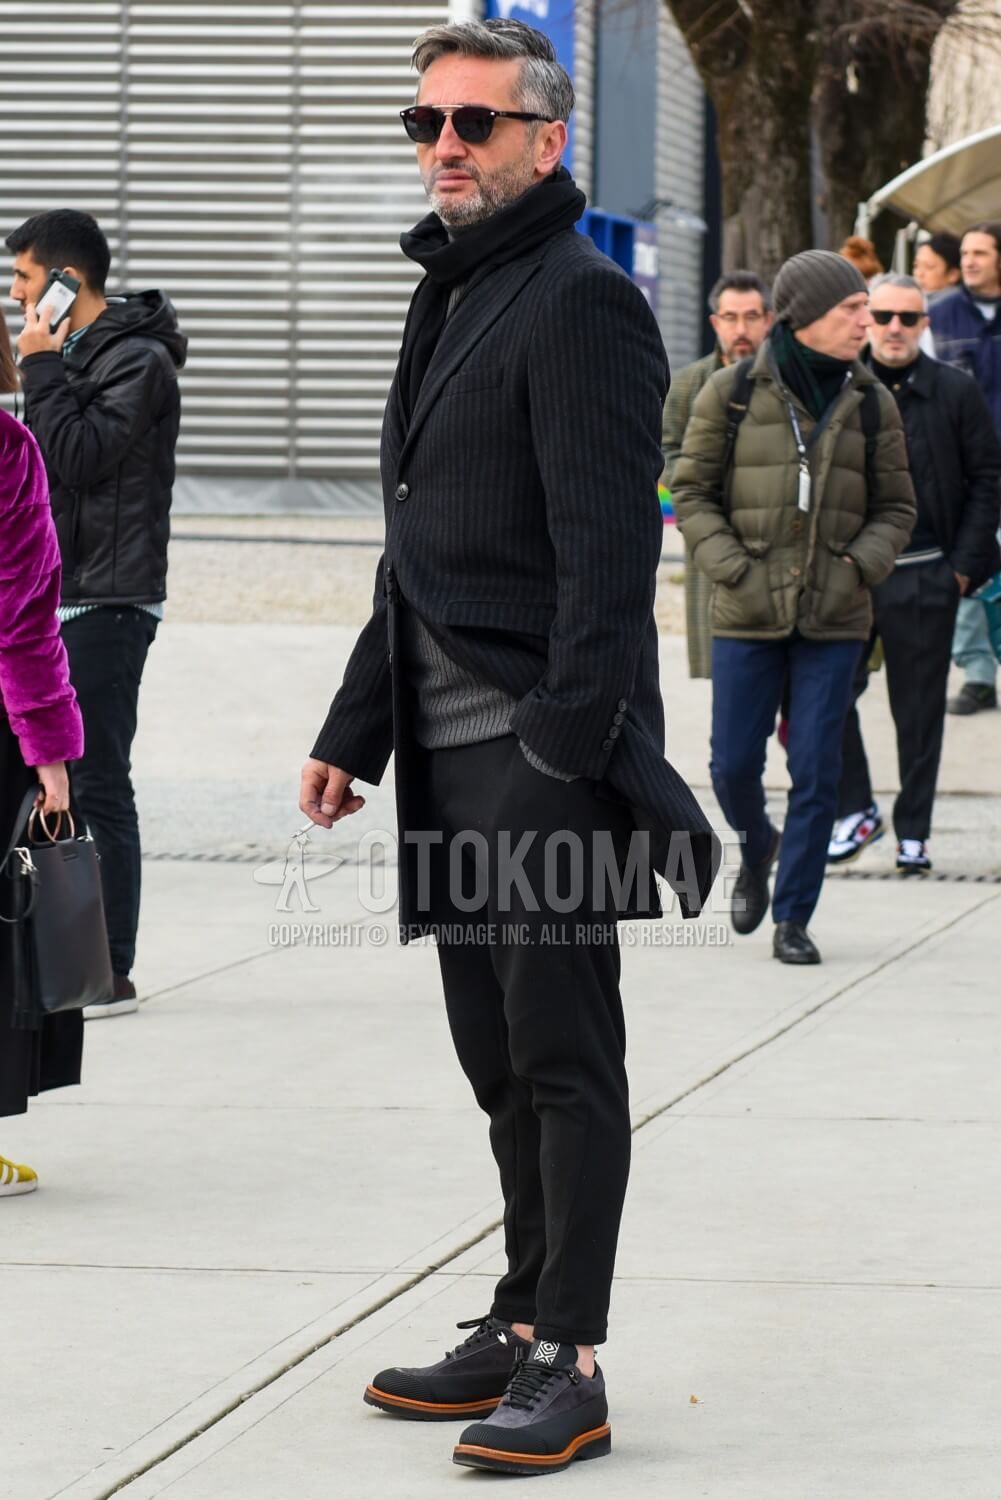 ジョガーパンツ 街着に使える選び方 おすすめブランドのアイテムを厳選ピック メンズファッションメディア Otokomaeotokomae 男前研究所